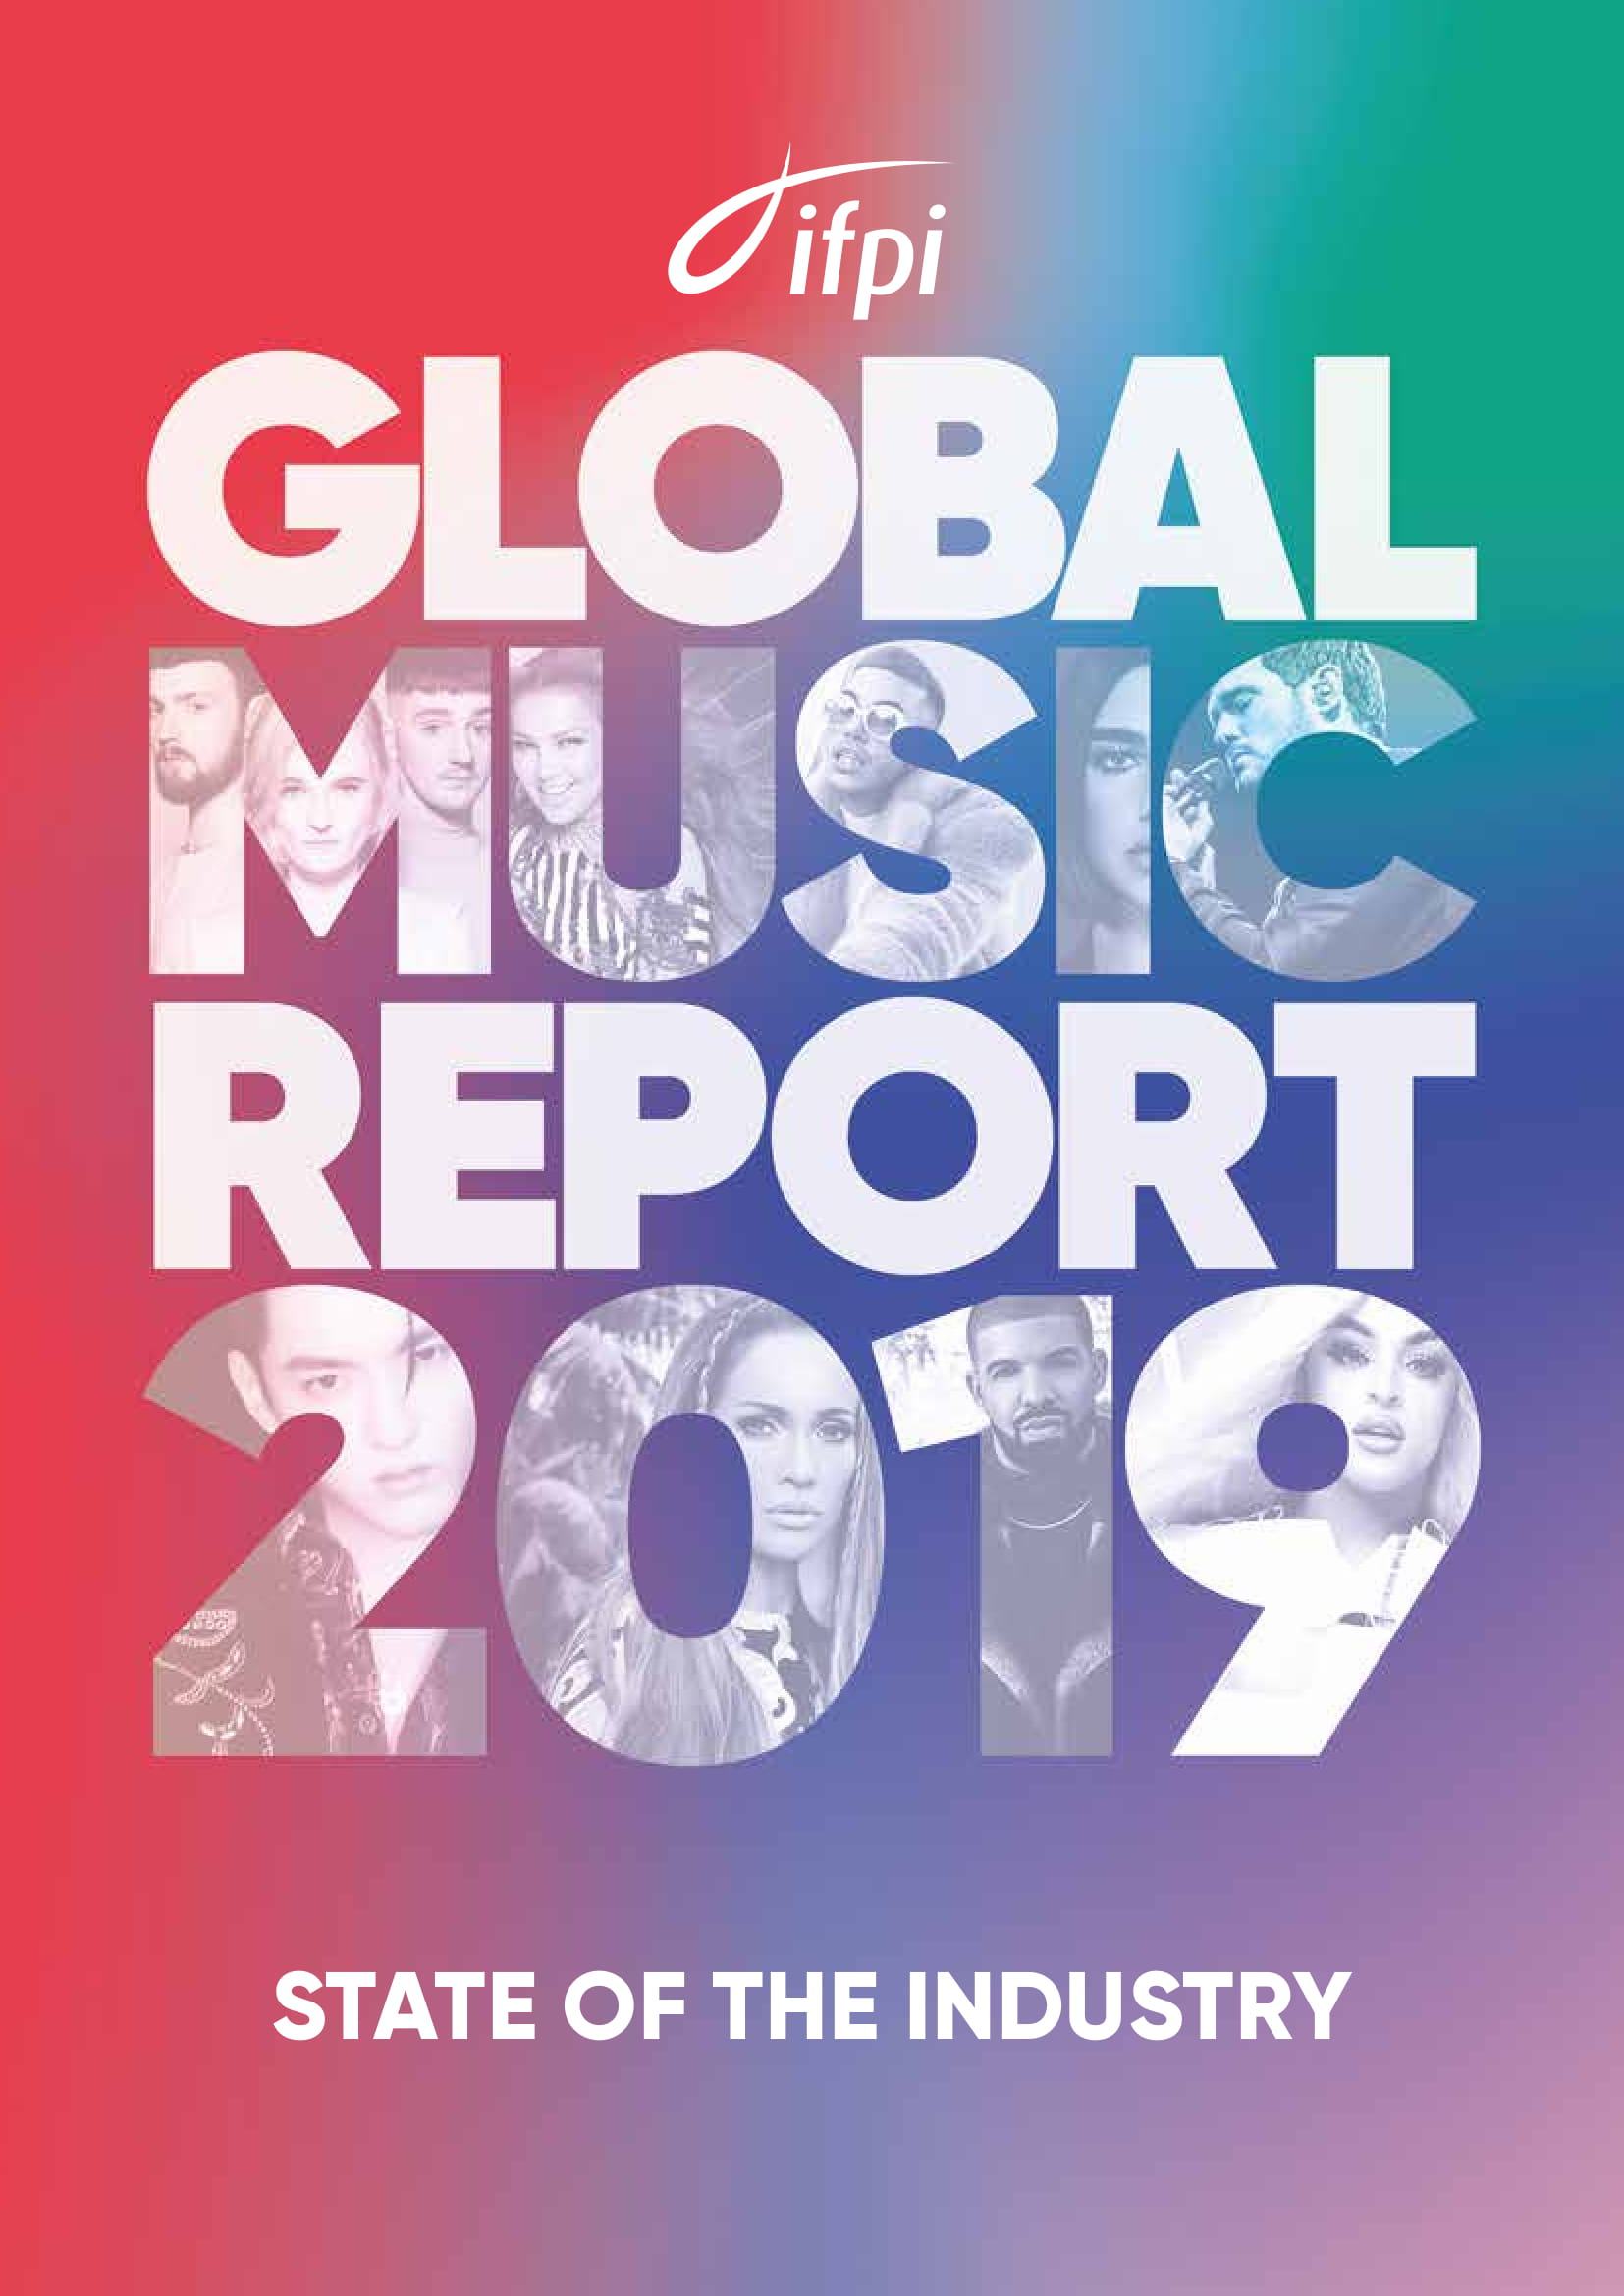 IFPI：2019年全球音乐报告